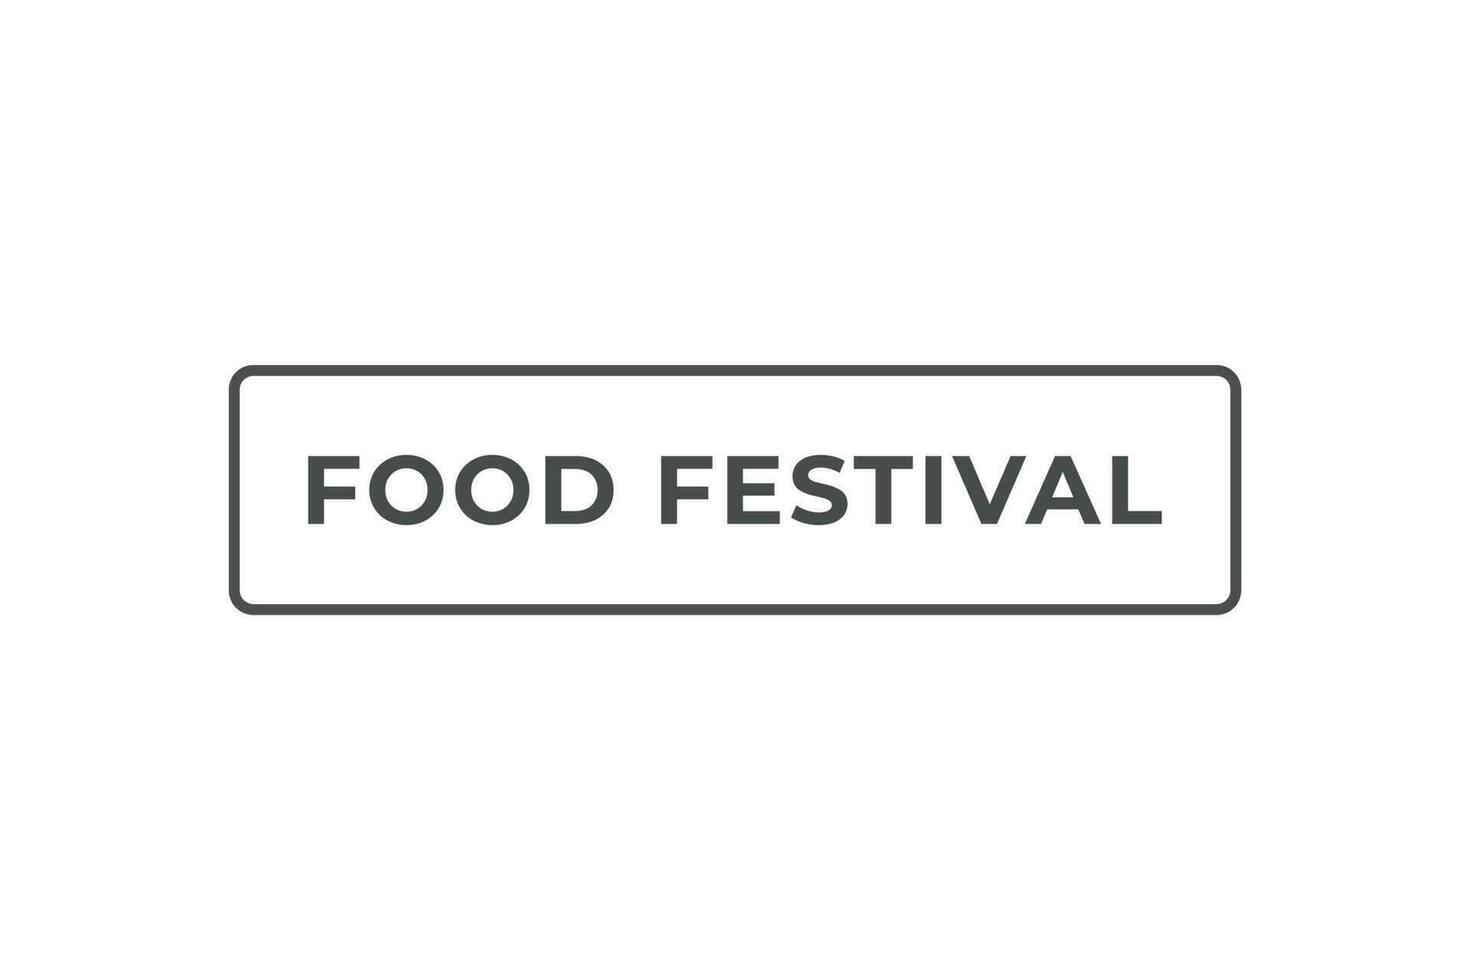 cibo Festival pulsante. discorso bolla, bandiera etichetta cibo Festival vettore